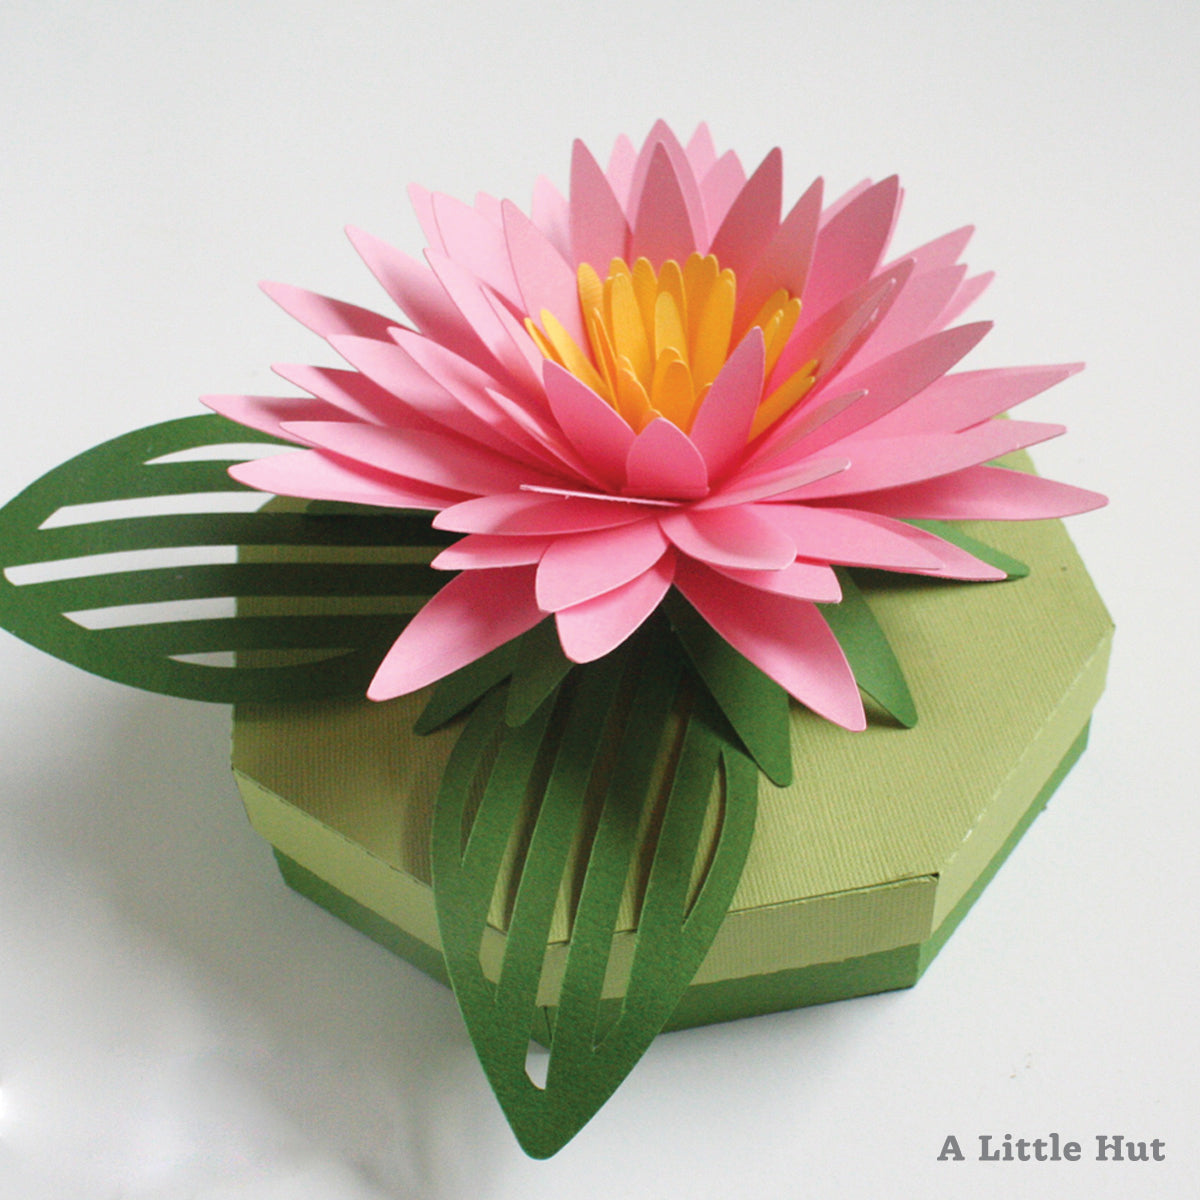 A Little Hut - Aster Gift Box